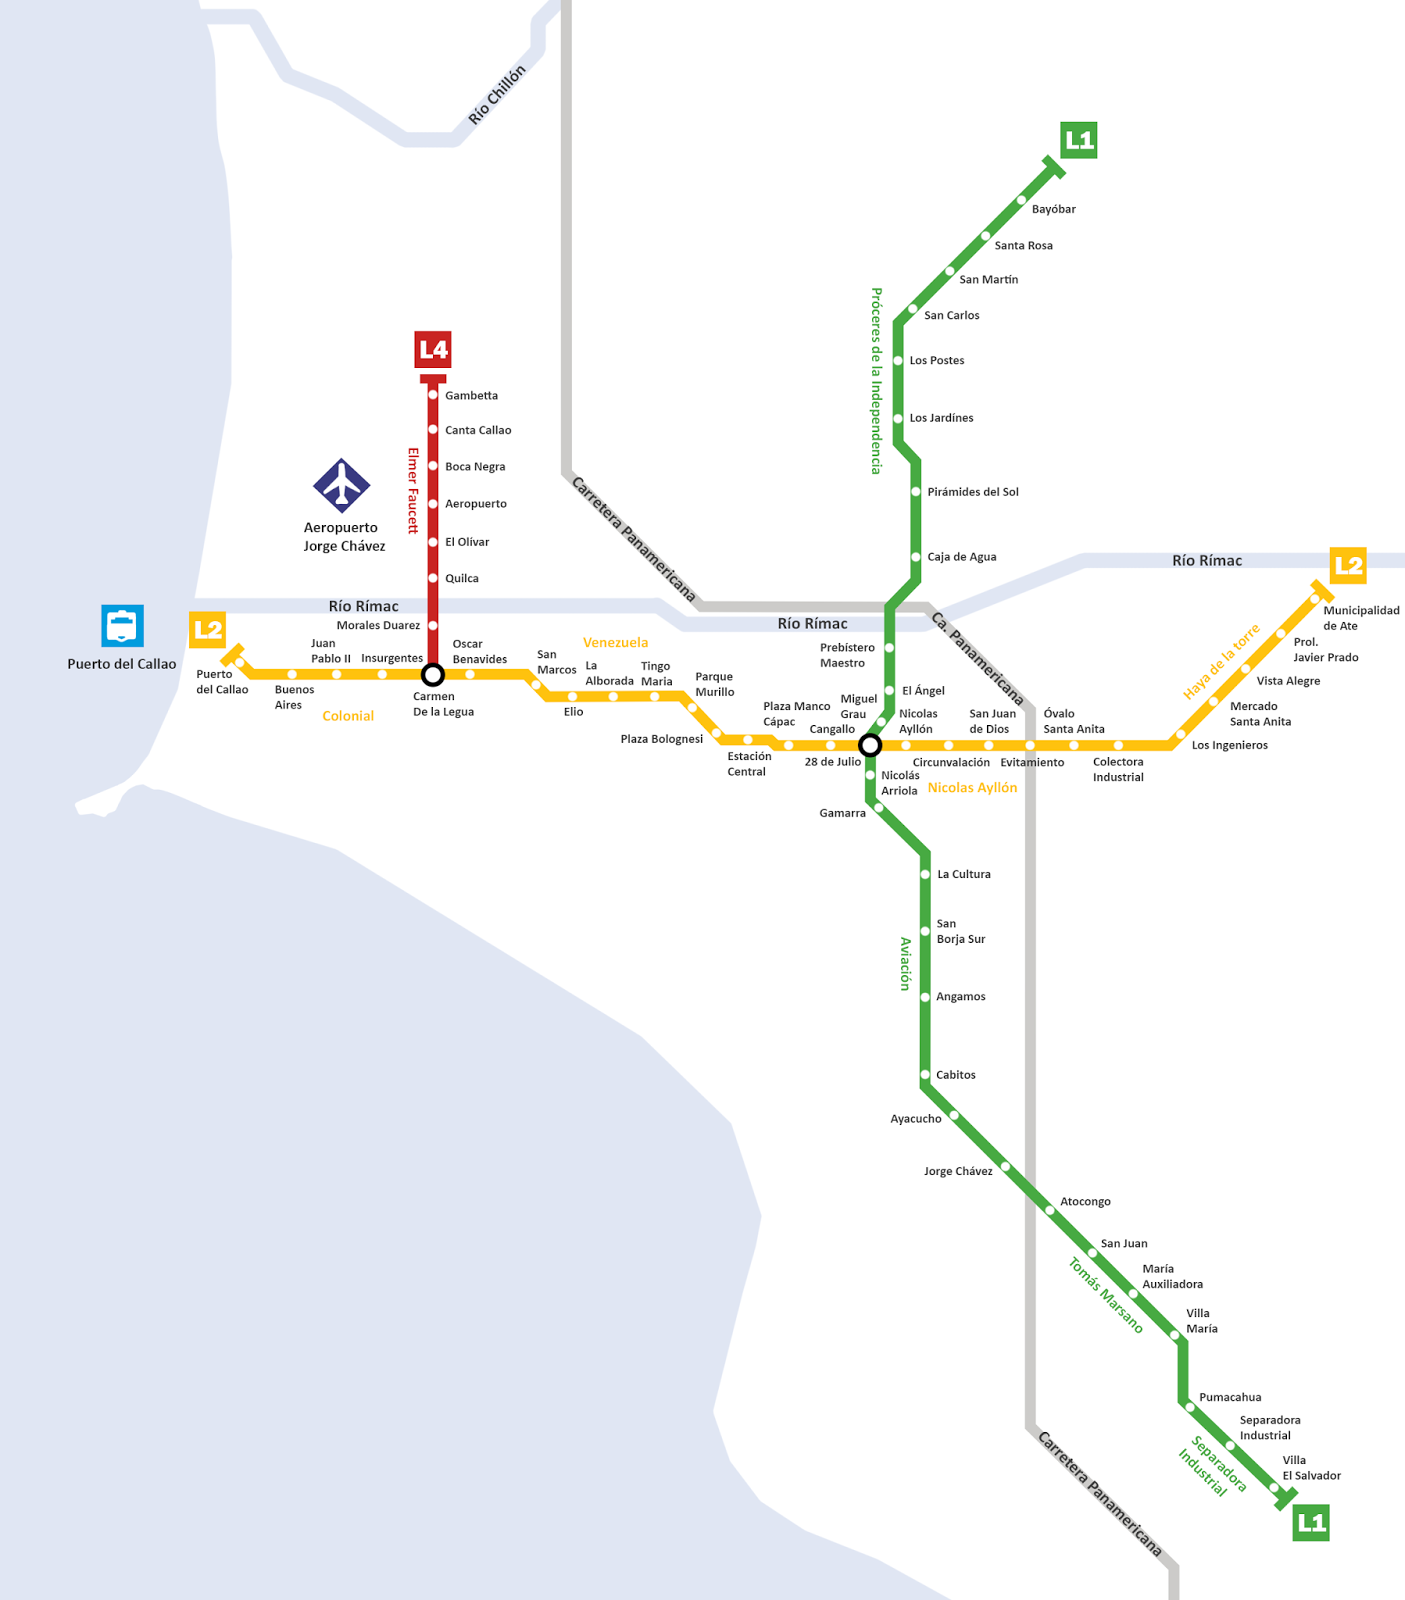 Mapa Del Metro Subterraneo De Lima | Images and Photos finder